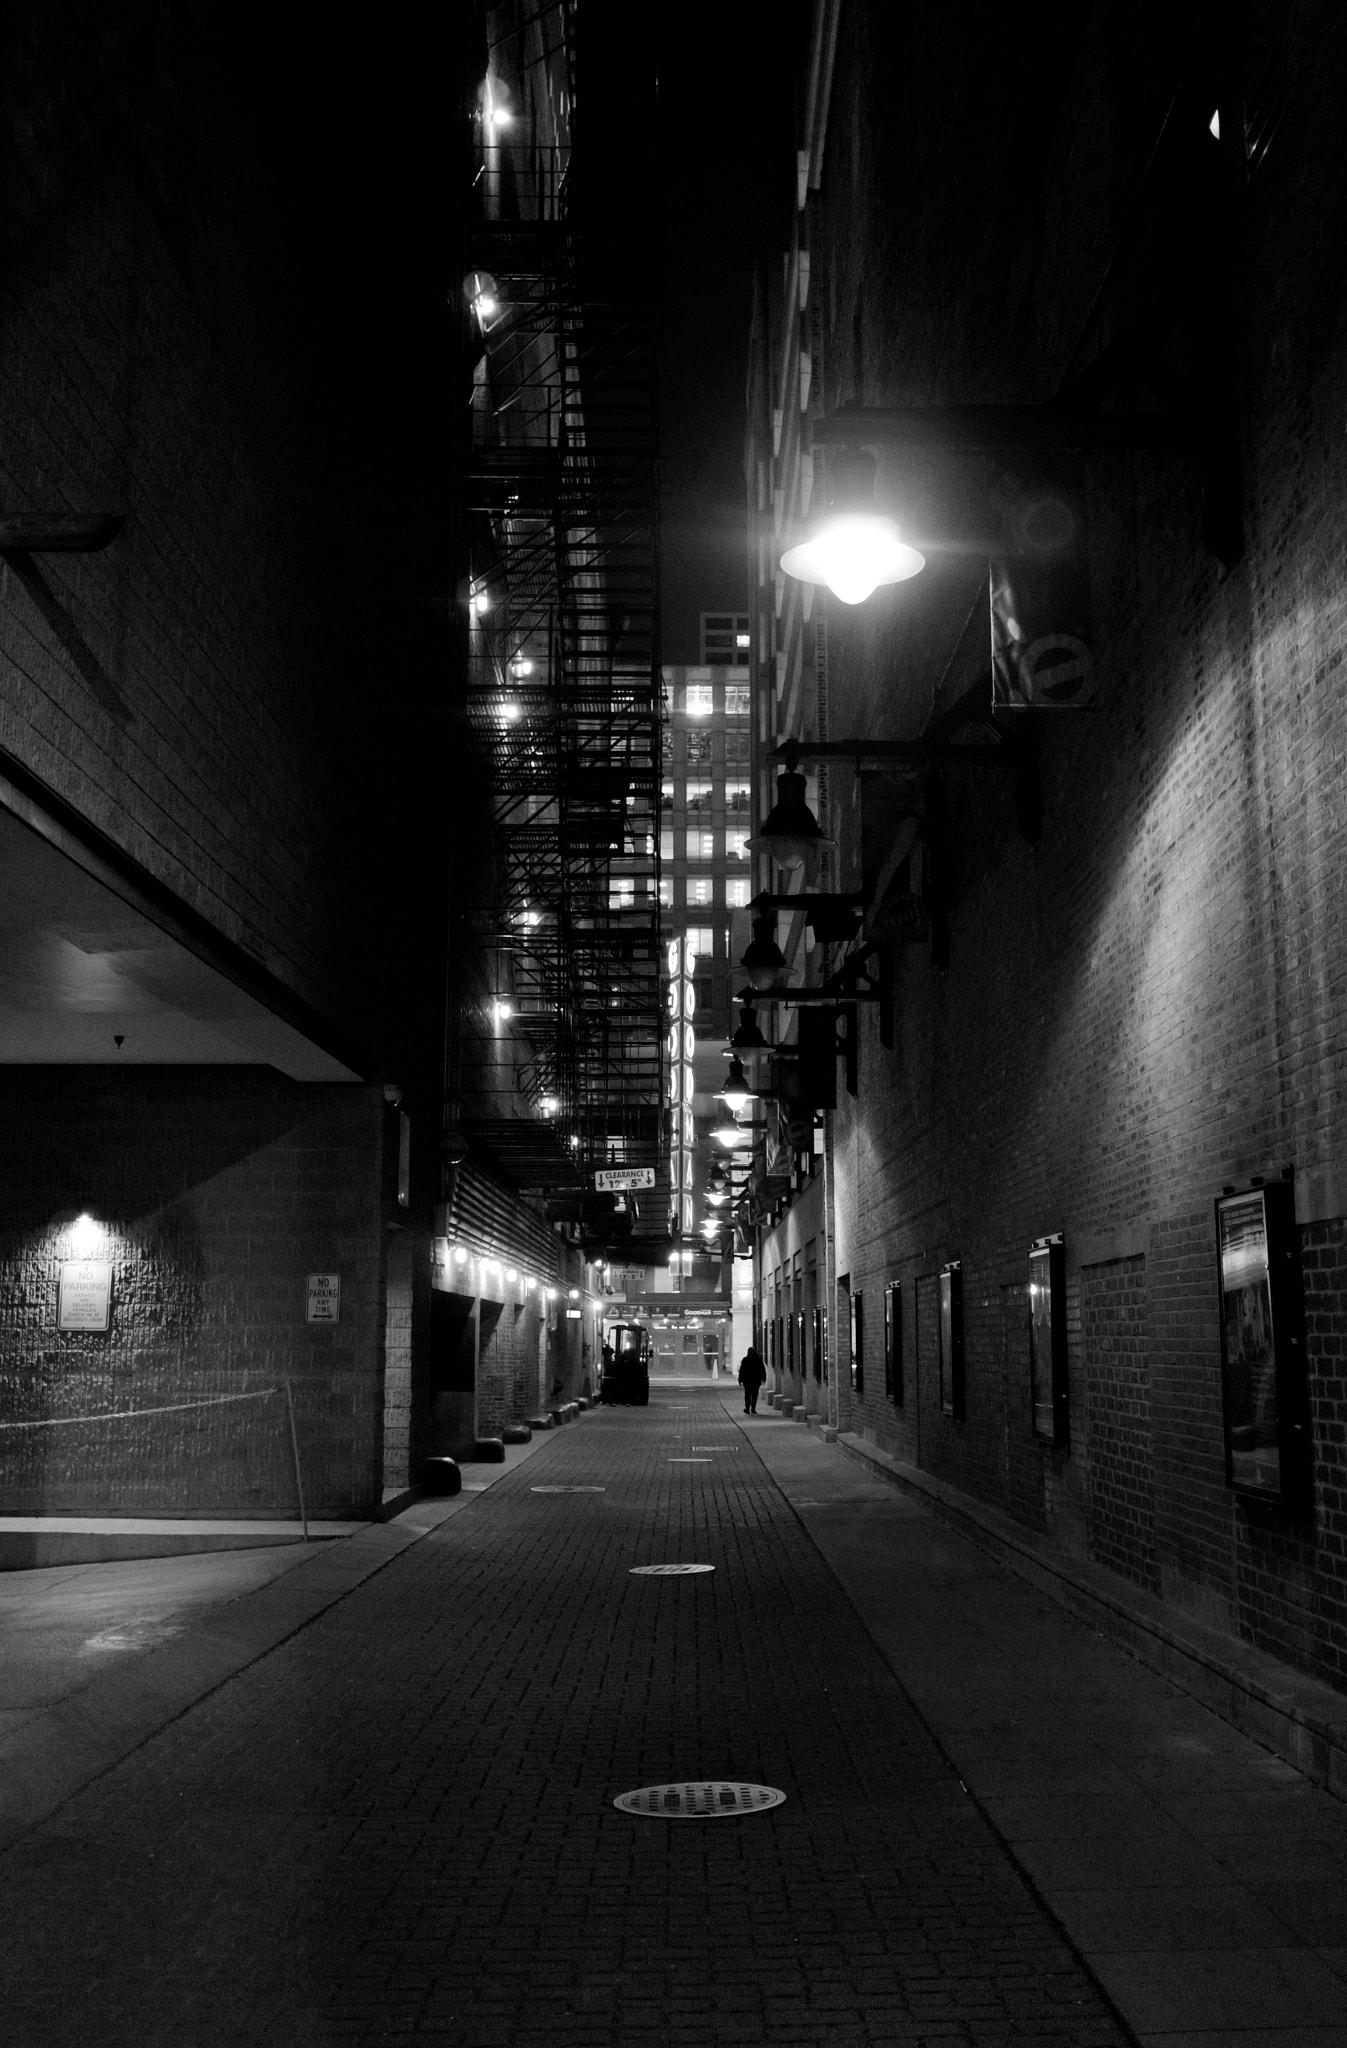 Sony E 20mm F2.8 sample photo. Empty night photography